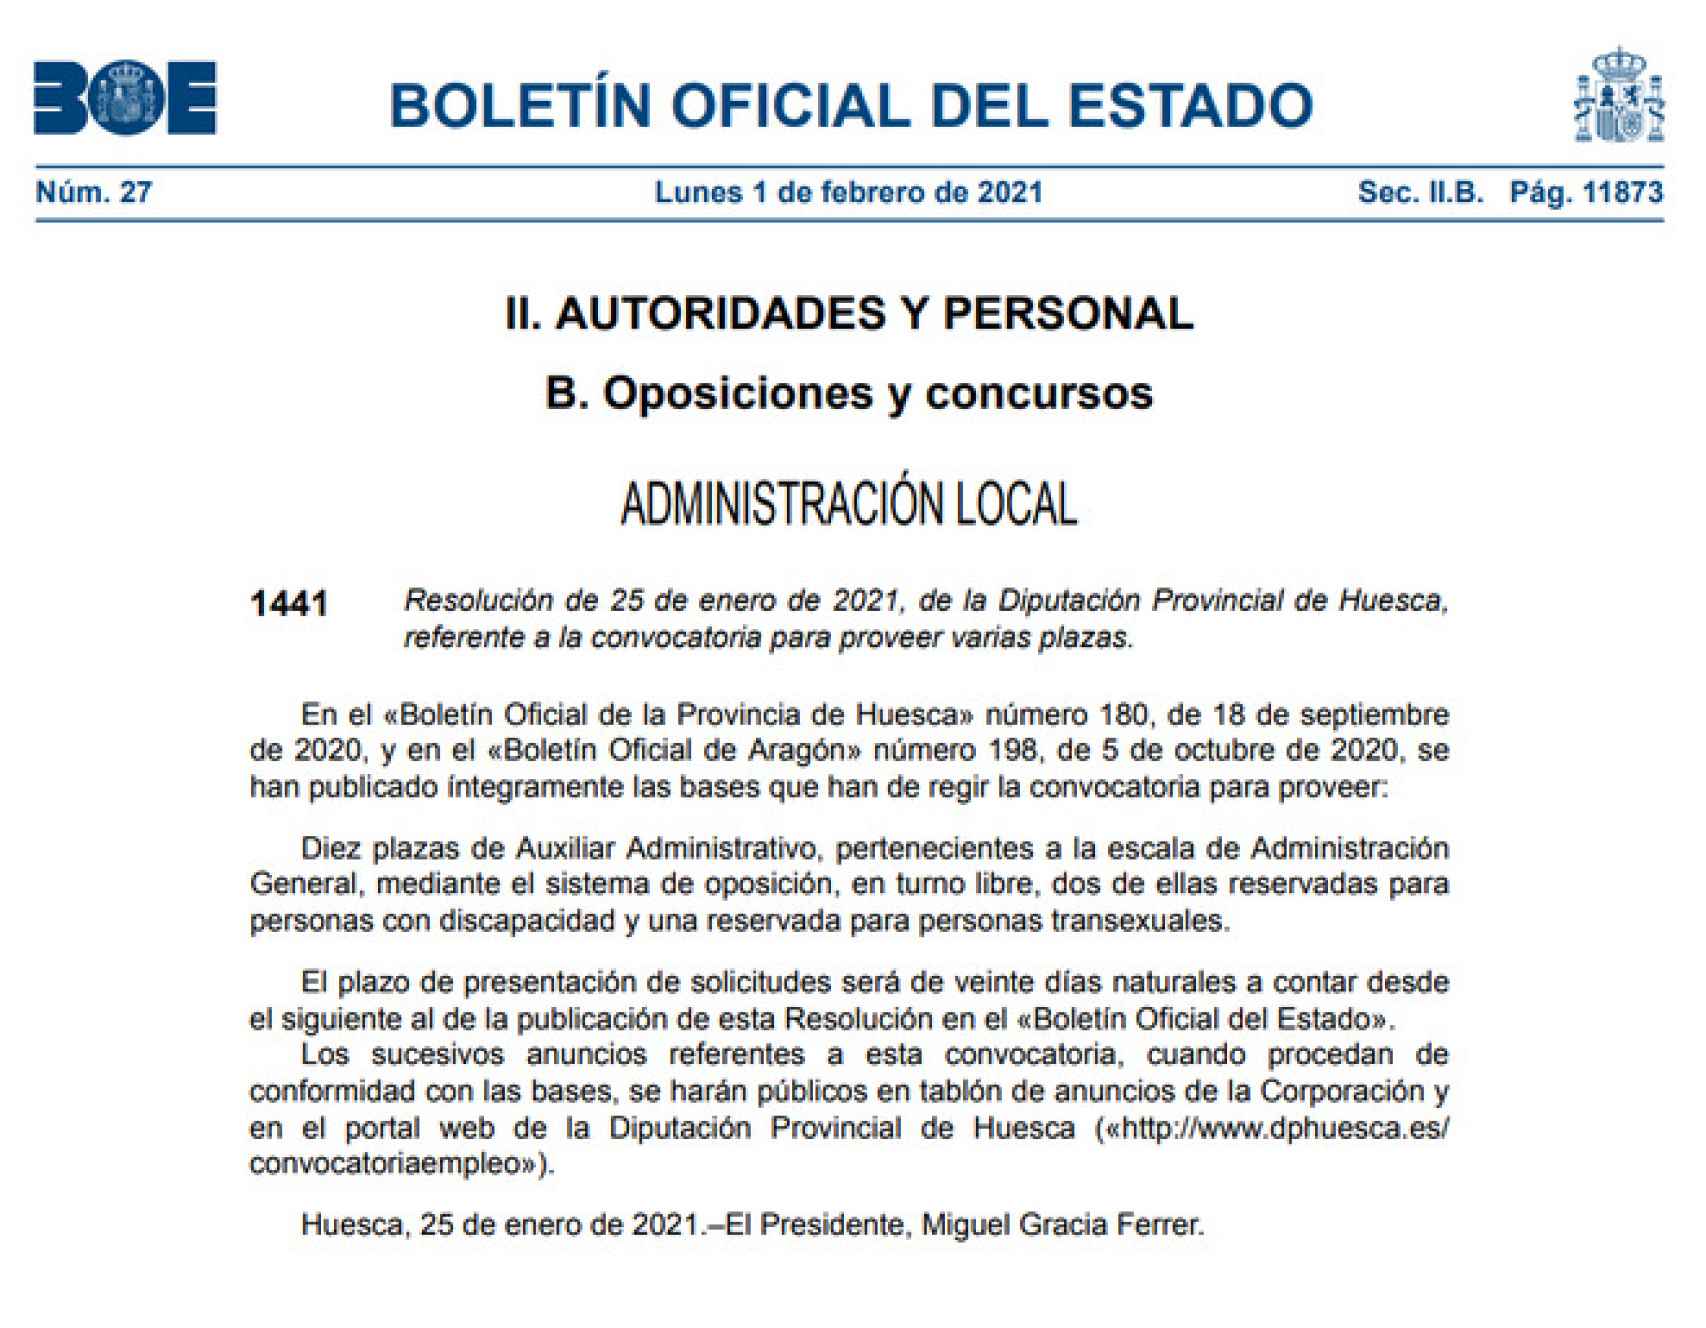 La resolución del 25 de enero de la Diputación de Huesca.